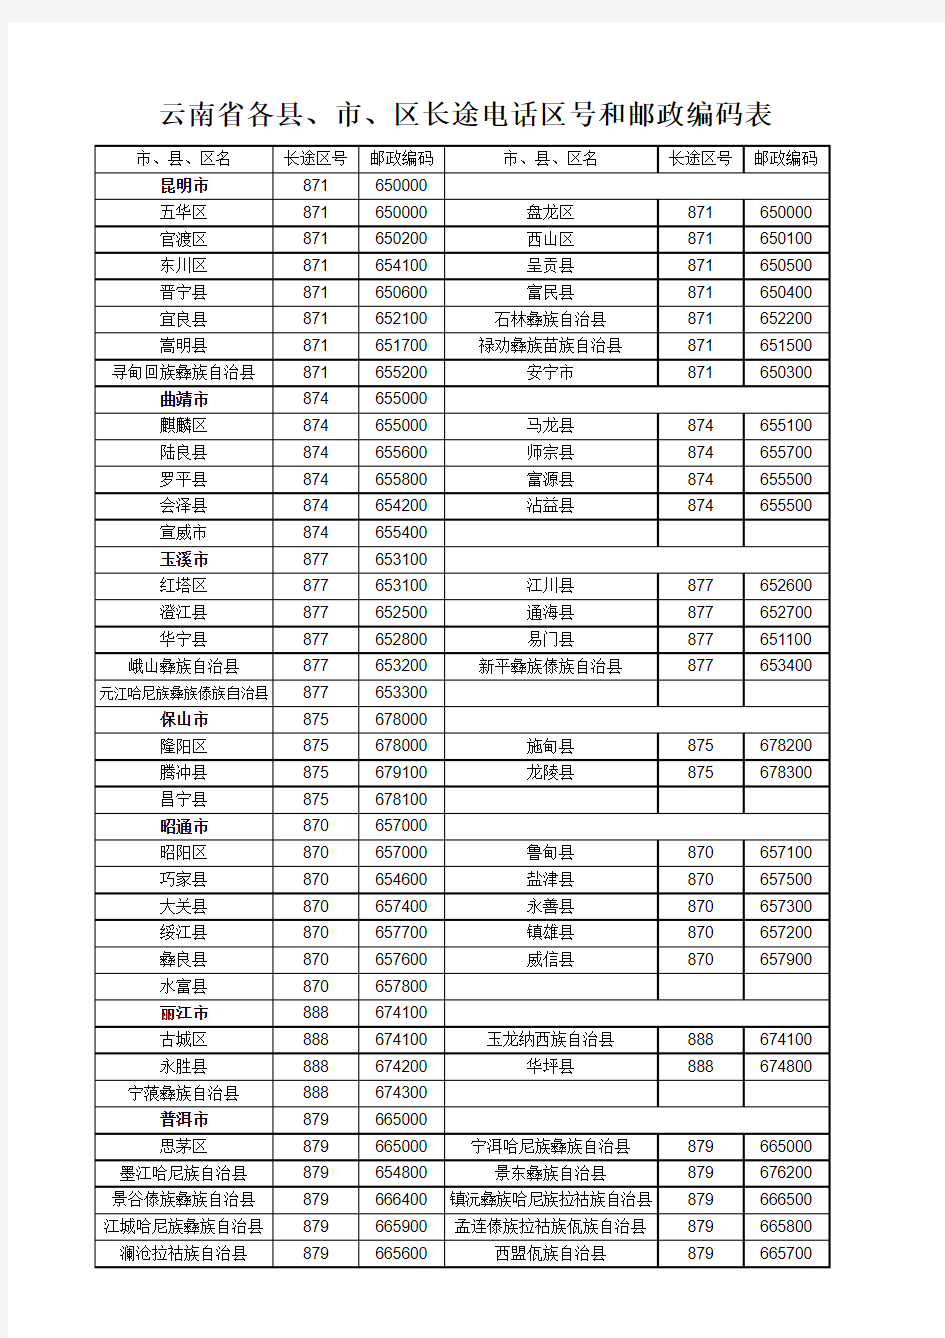 云南省各县、市、区长途区号和邮政编码表